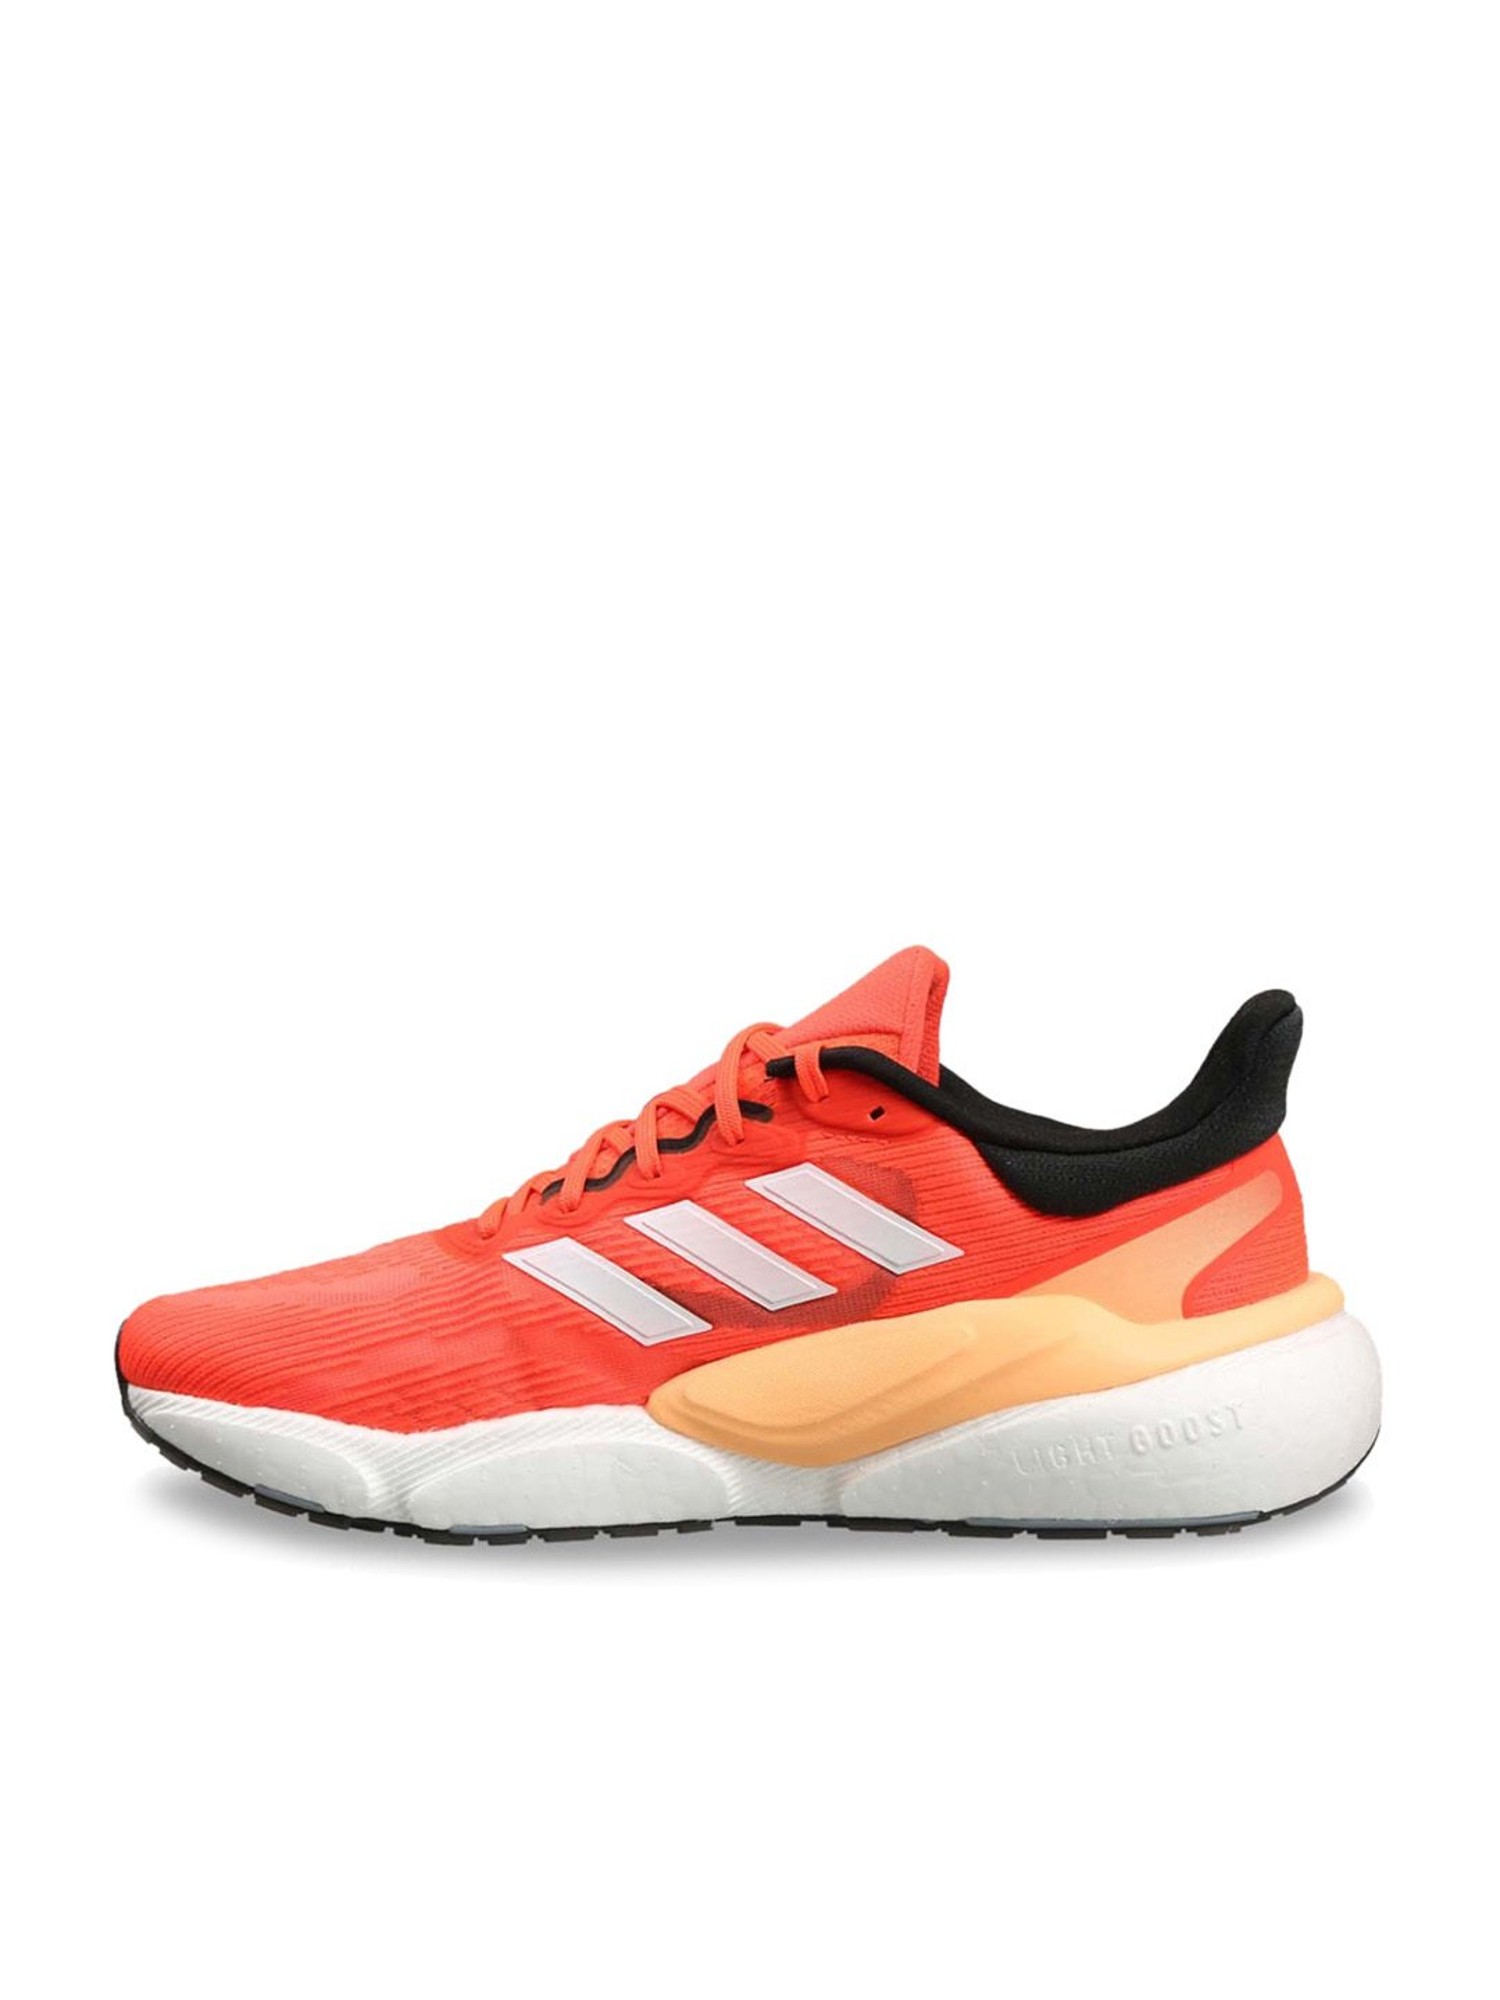 Custom Adidas Campus Sneakers [Suede Orange/Black] : r/Customsneakers